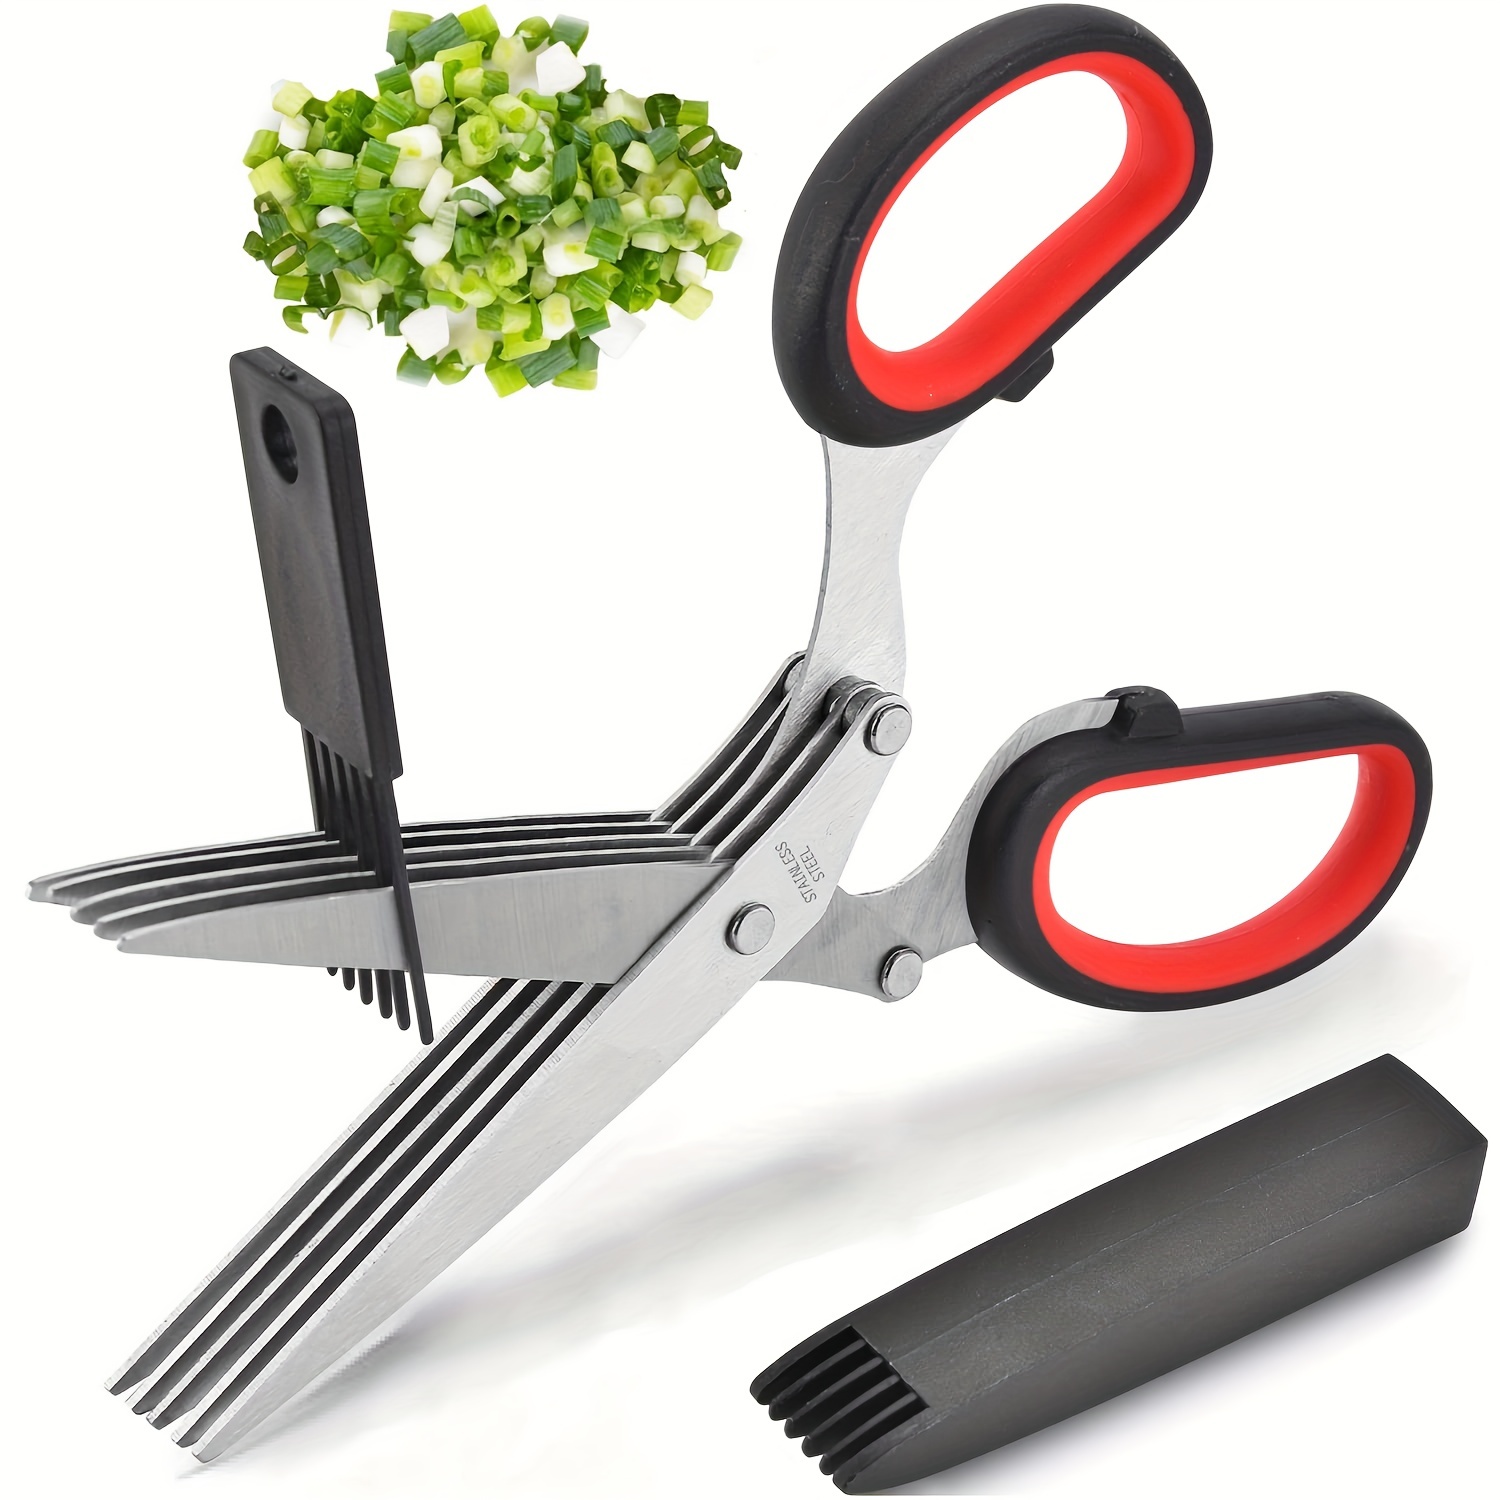 Tansung Multipurpose Herb Scissors 5 Sharp Blades For - Temu